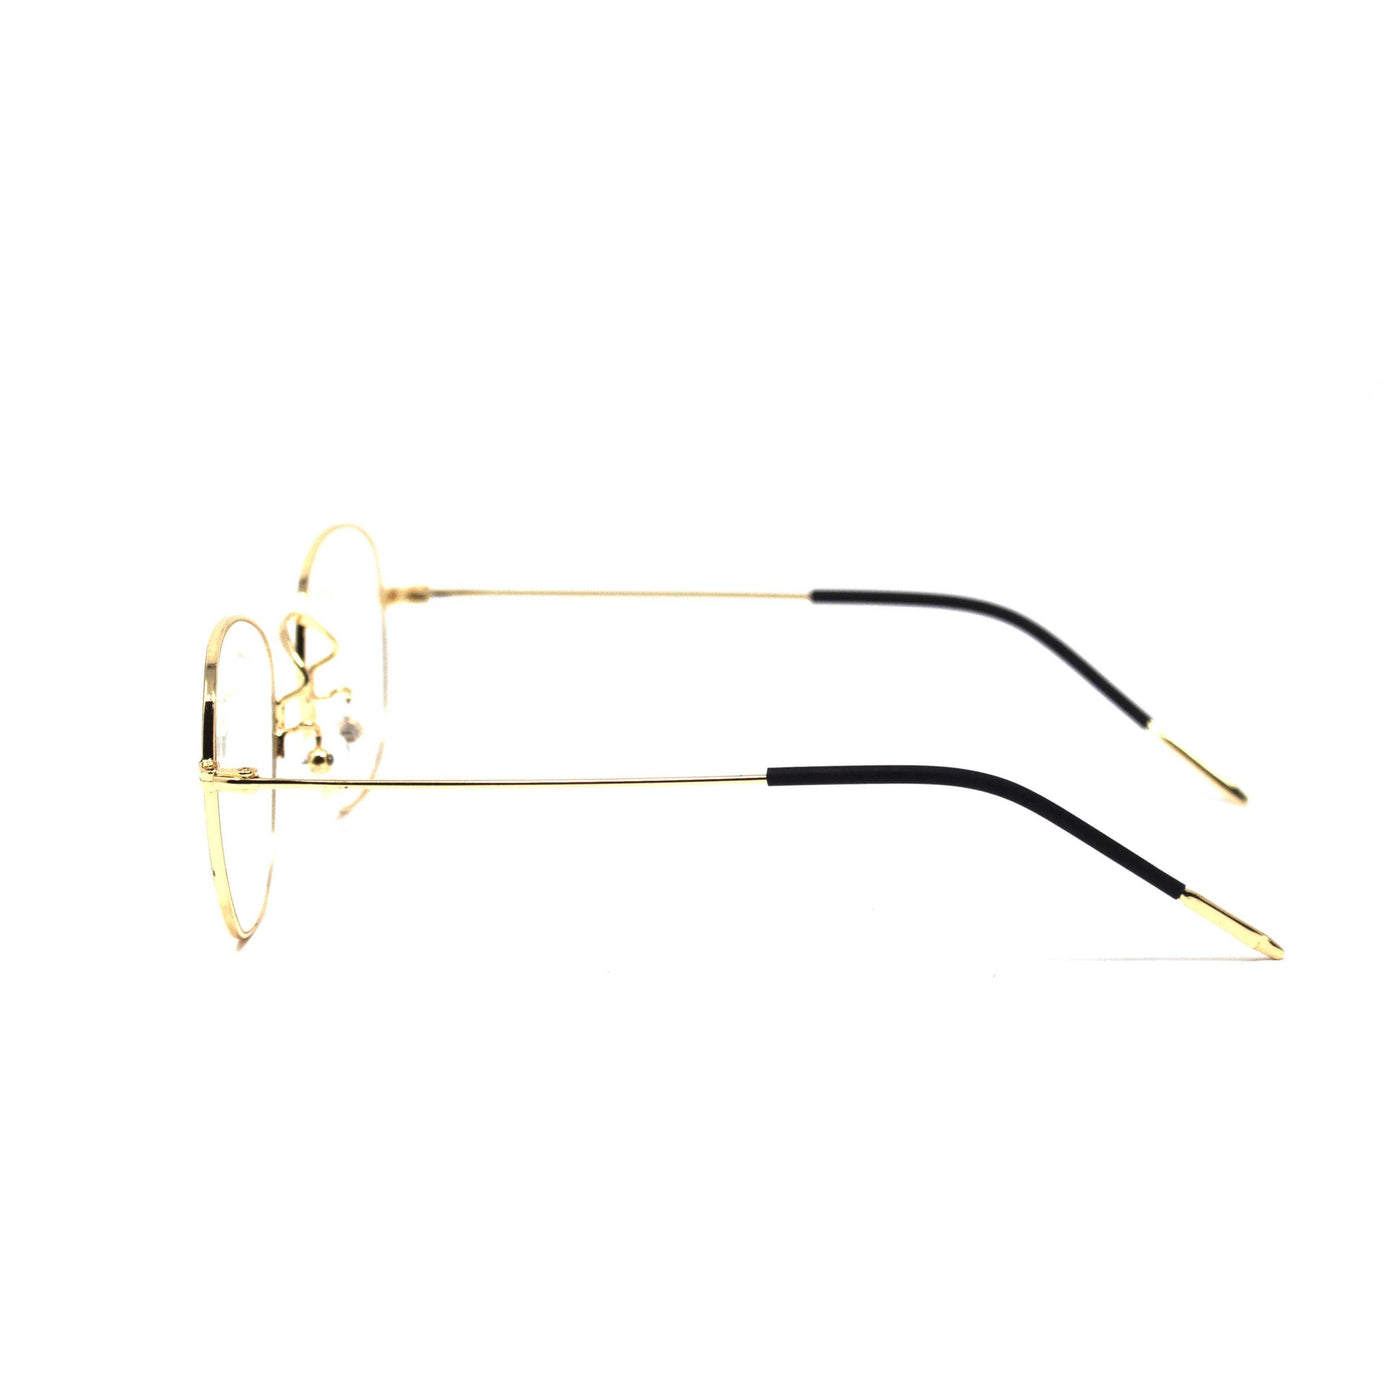 Oval Golden Black Frame Eyewear